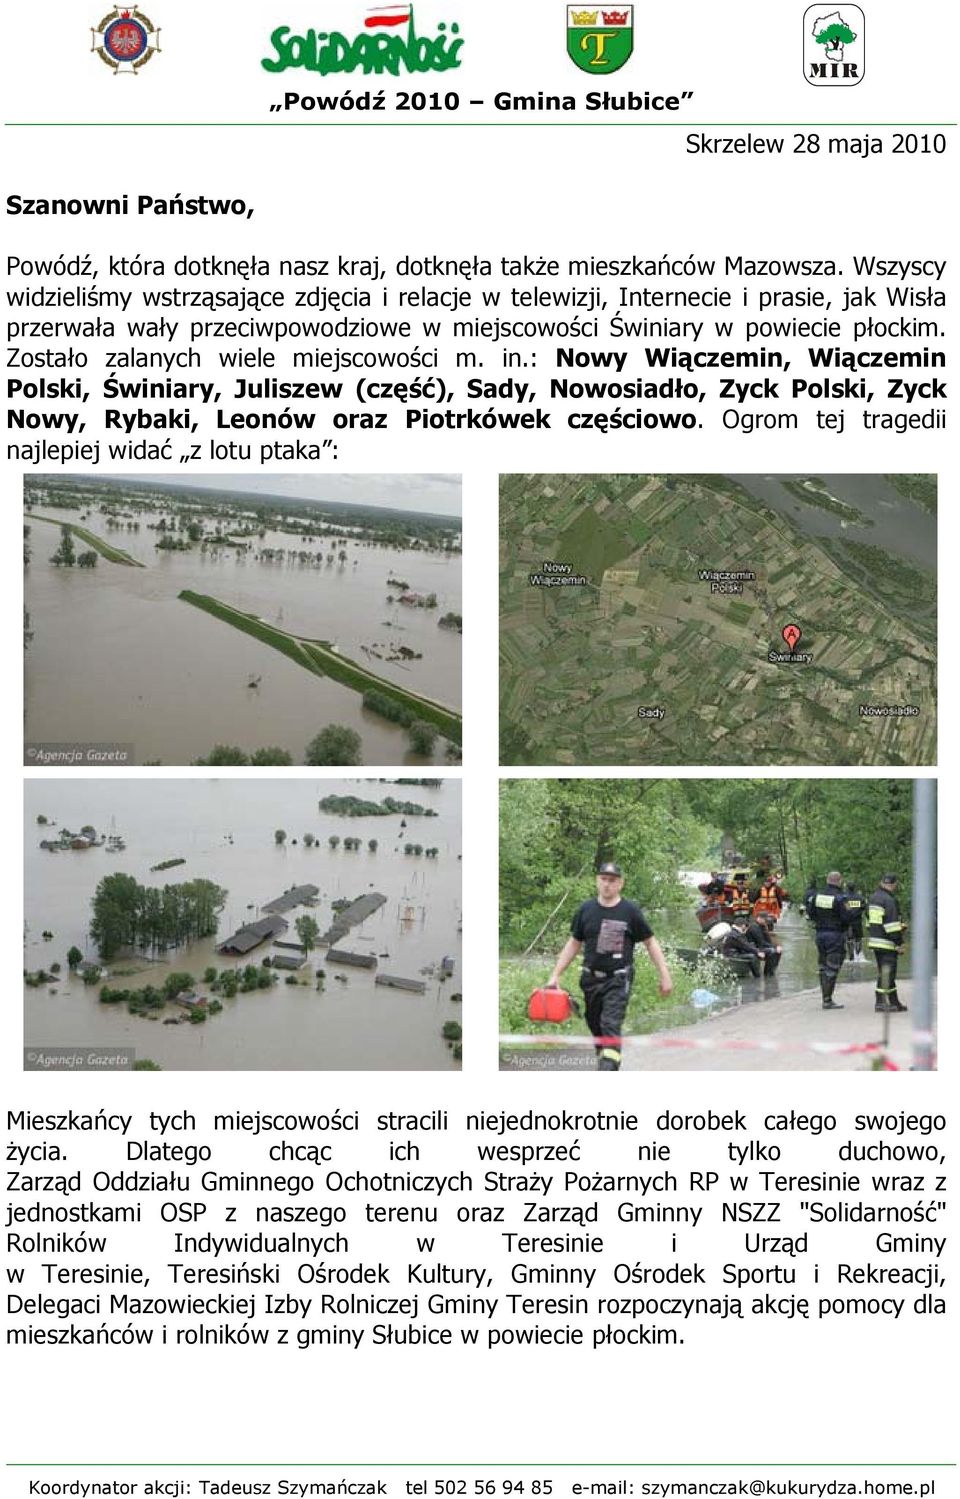 Zostało zalanych wiele miejscowości m. in.: Nowy Wiączemin, Wiączemin Polski, Świniary, Juliszew (część), Sady, Nowosiadło, Zyck Polski, Zyck Nowy, Rybaki, Leonów oraz Piotrkówek częściowo.